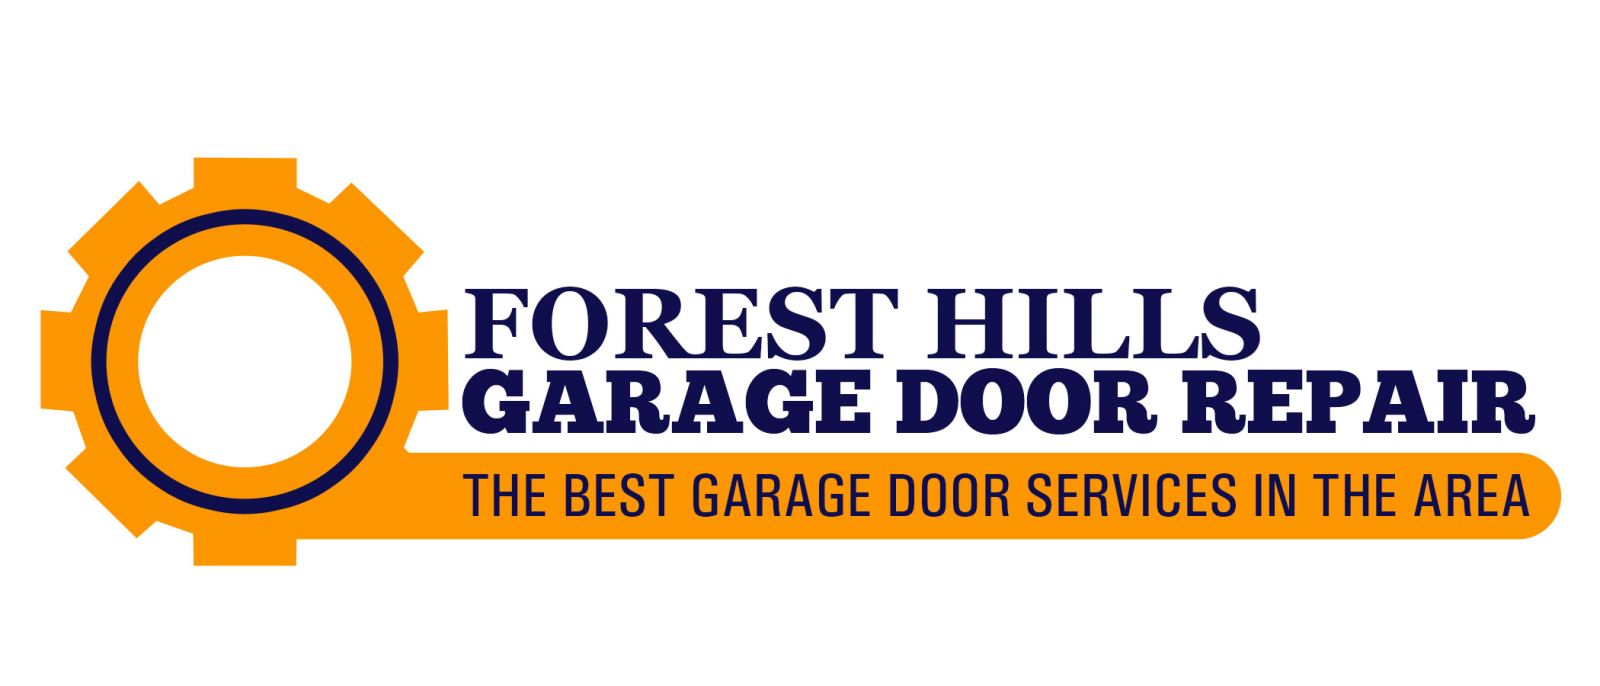 Garage Door Repair Forest Hills